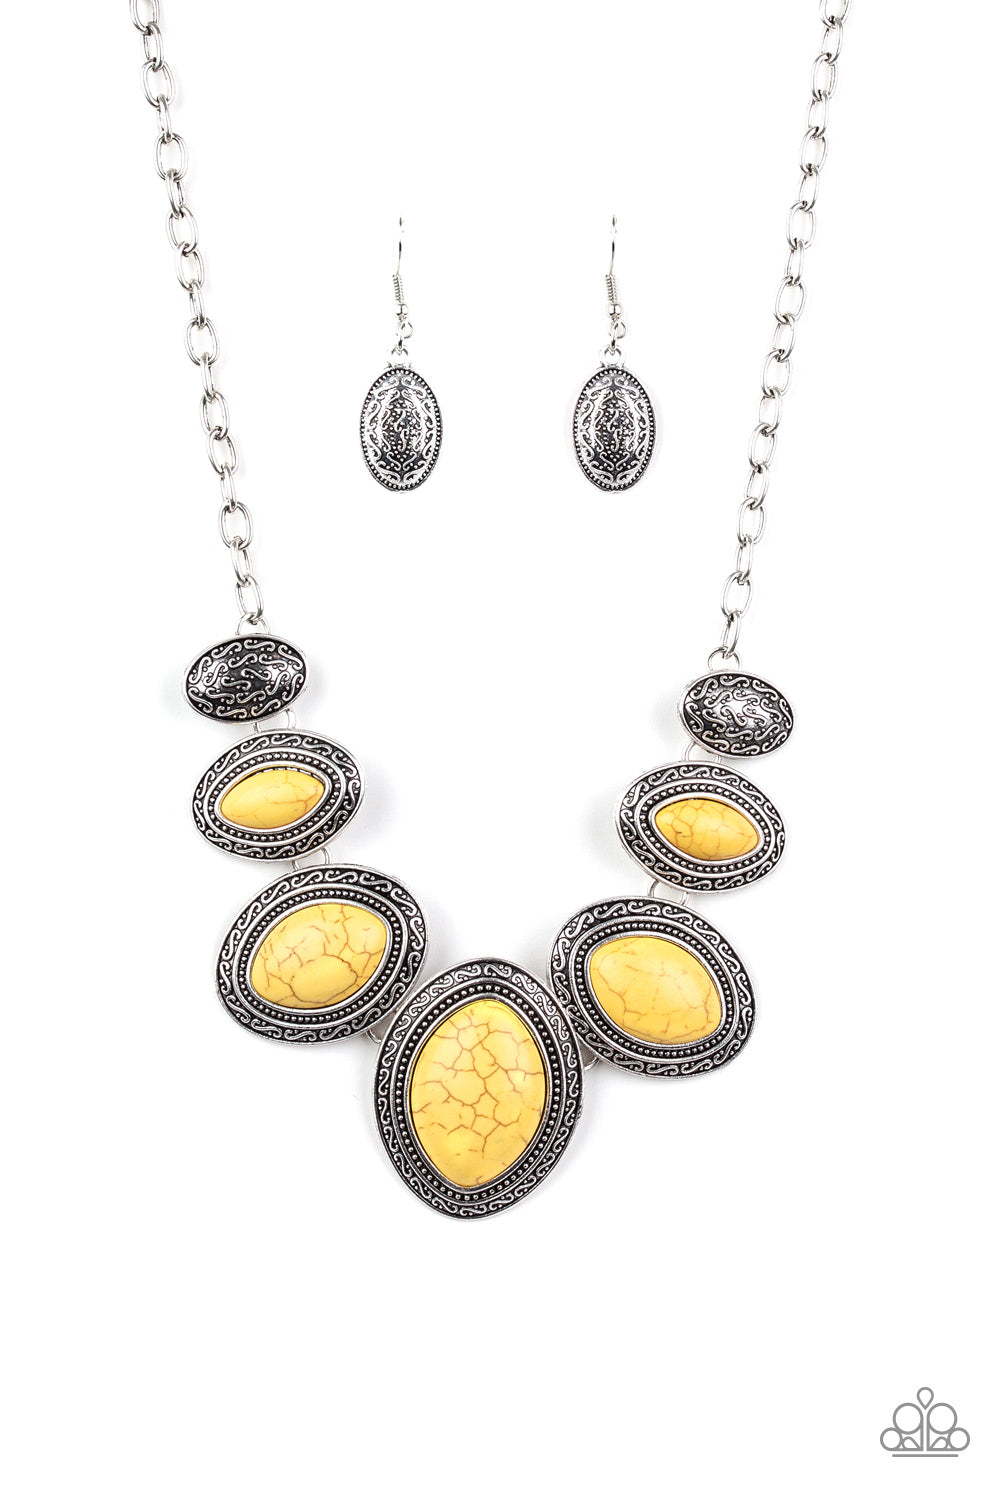 Sierra Serenity yellow - VJ Bedazzled Jewelry